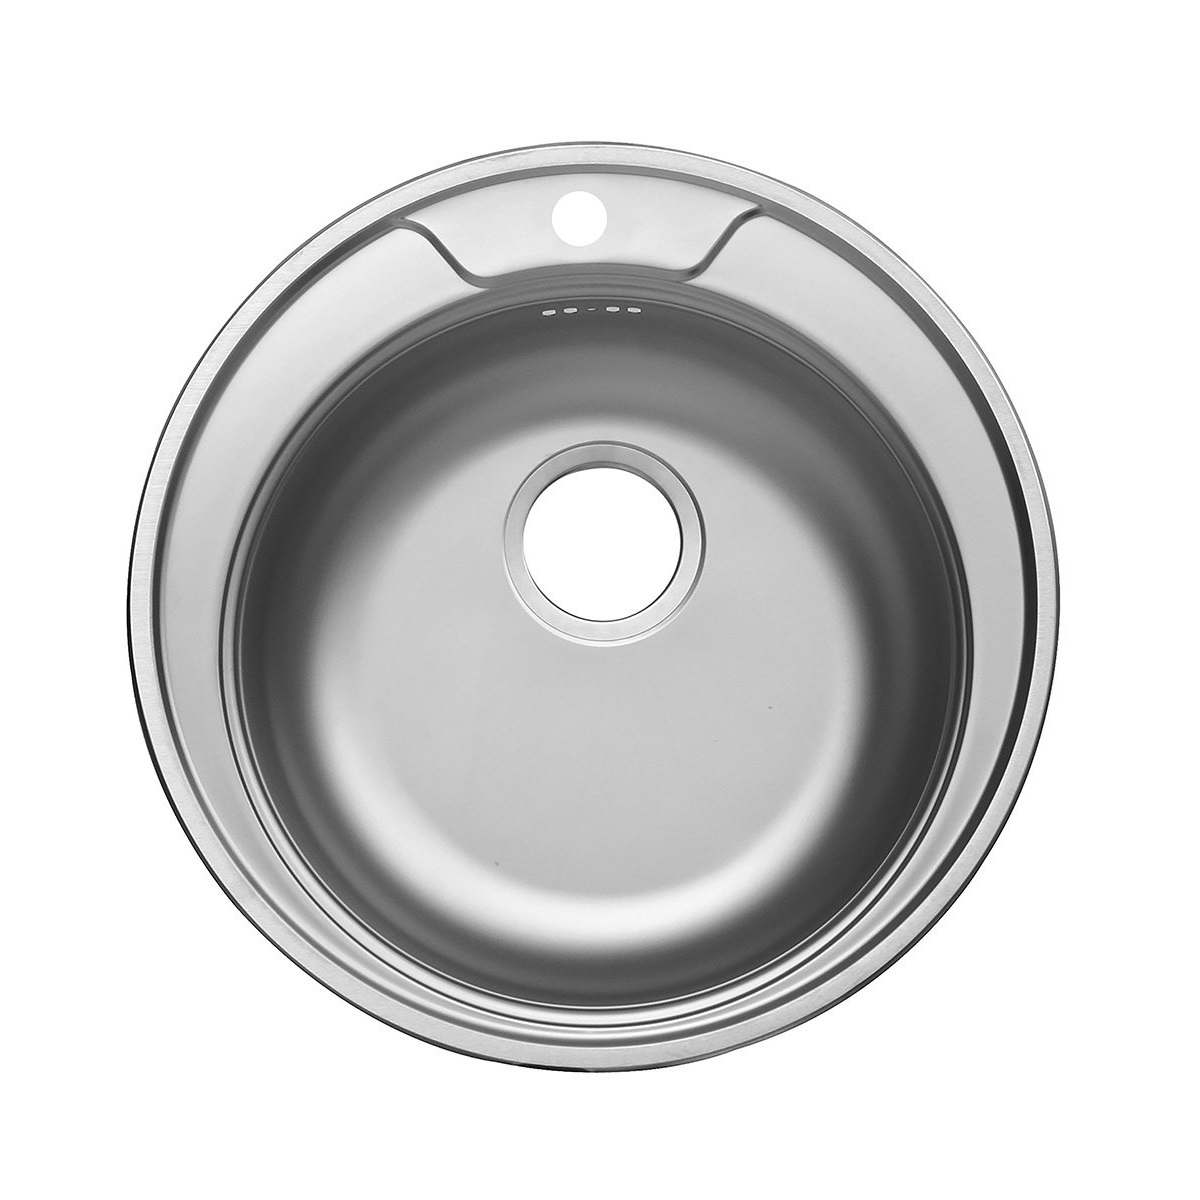 Мойка Фаворит FAD500 -GT6K 0C диаметр 500 мм, нержавеющая сталь,1 чаша, круглая, цвет нержавеющая сталь